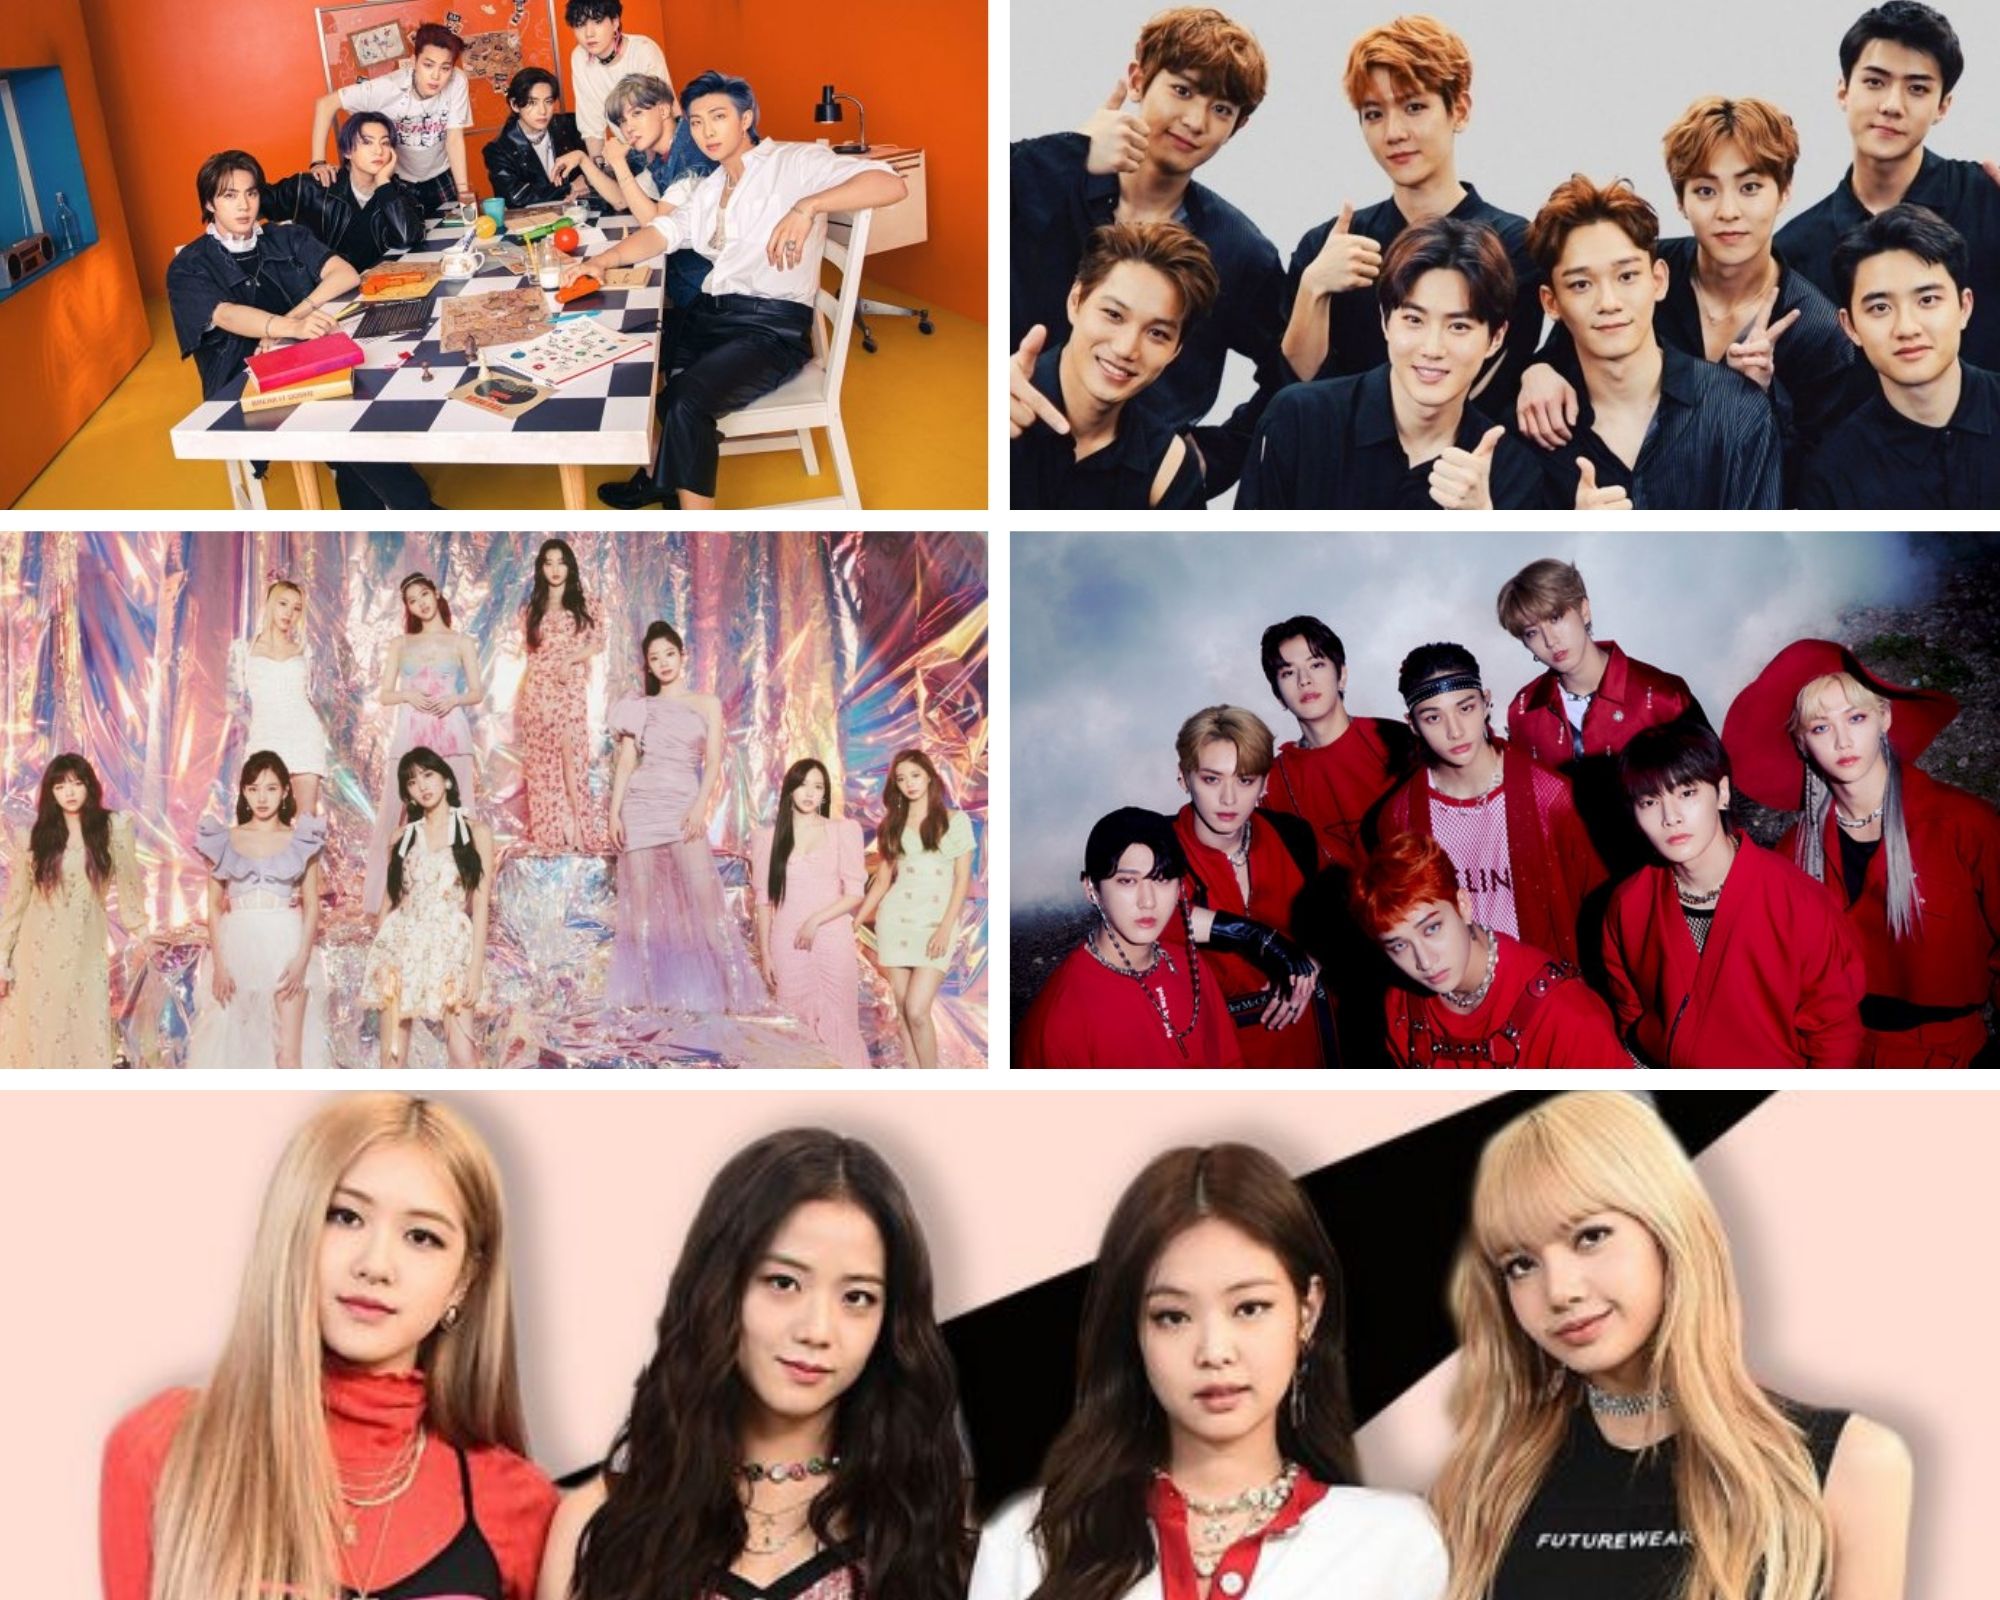 Top 5 most followed K-pop artists on Spotify in 2022